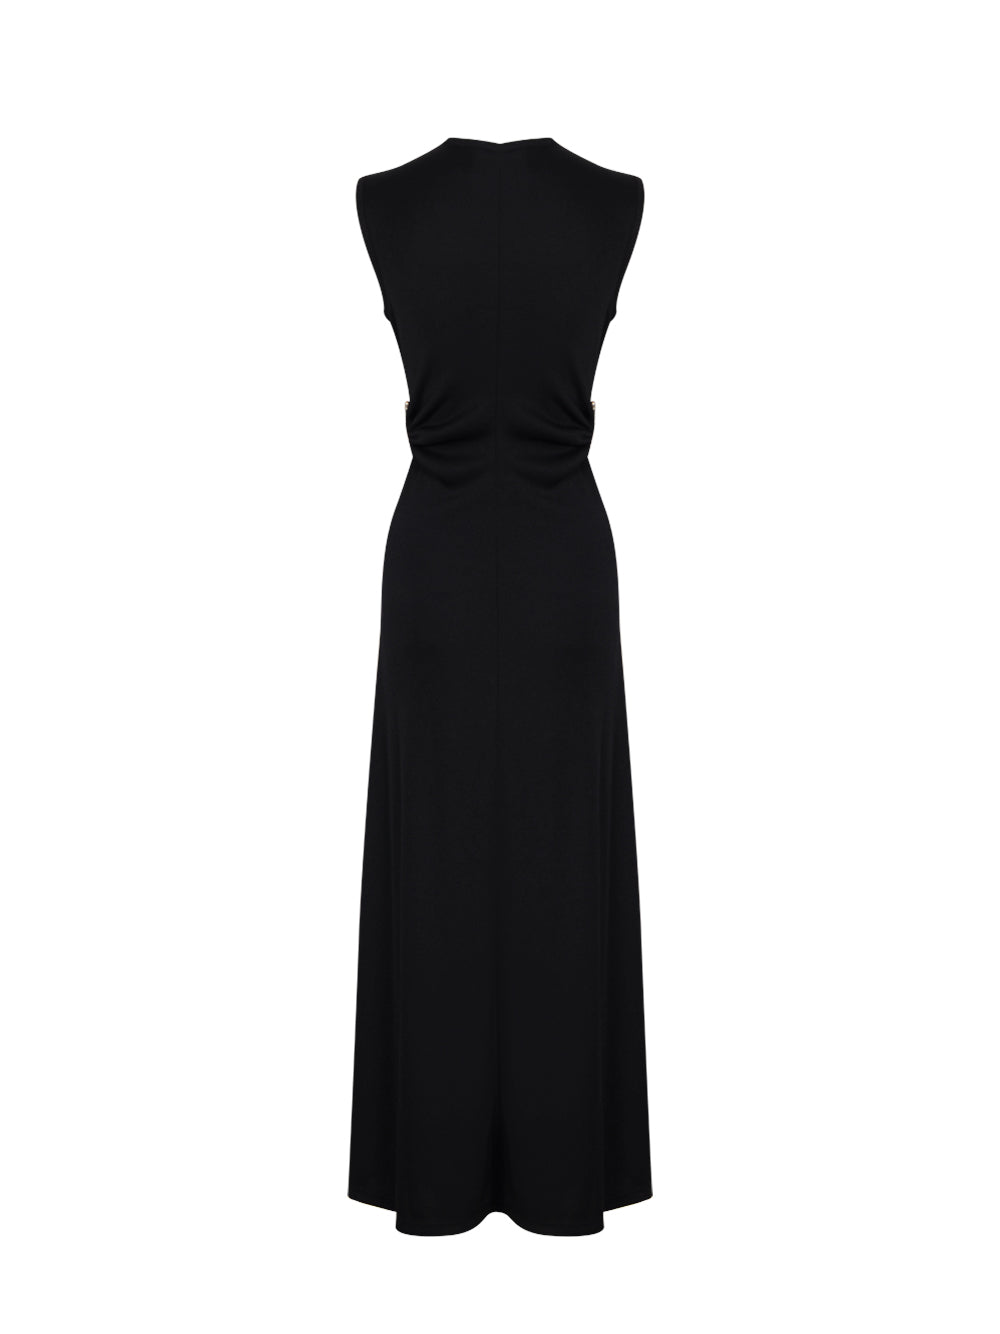 Orbit Fran Dress (Black)